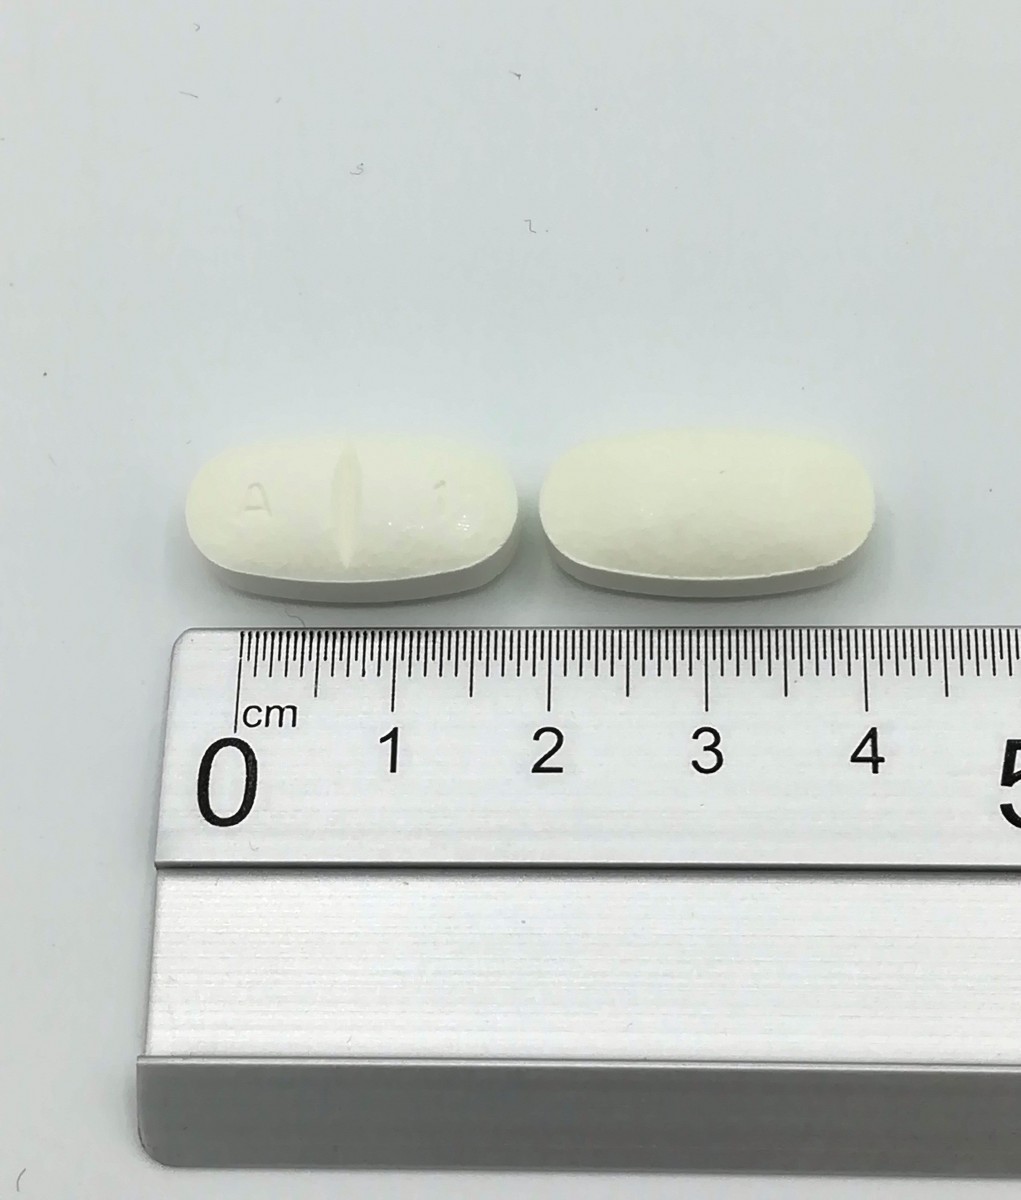 AMOXICILINA NORMON 1000 MG COMPRIMIDOS EFG  , 24 comprimidos fotografía de la forma farmacéutica.